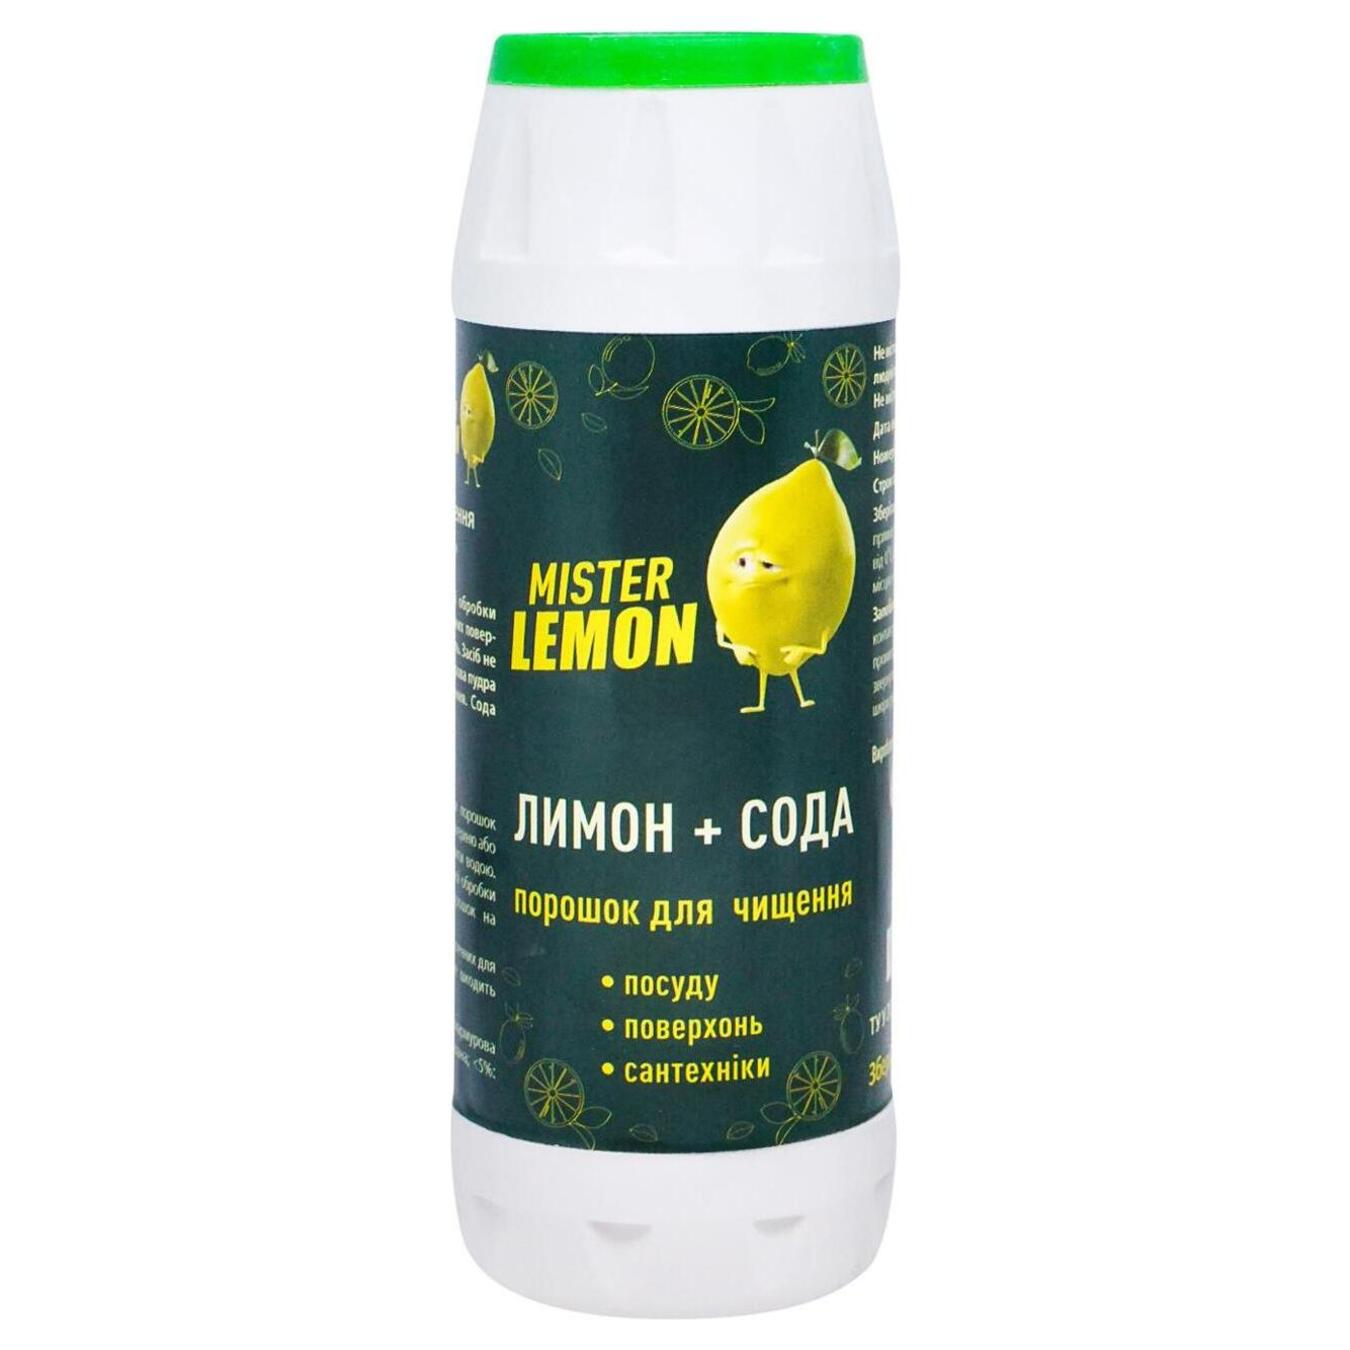 Mister Lemon cleaning powder 500g